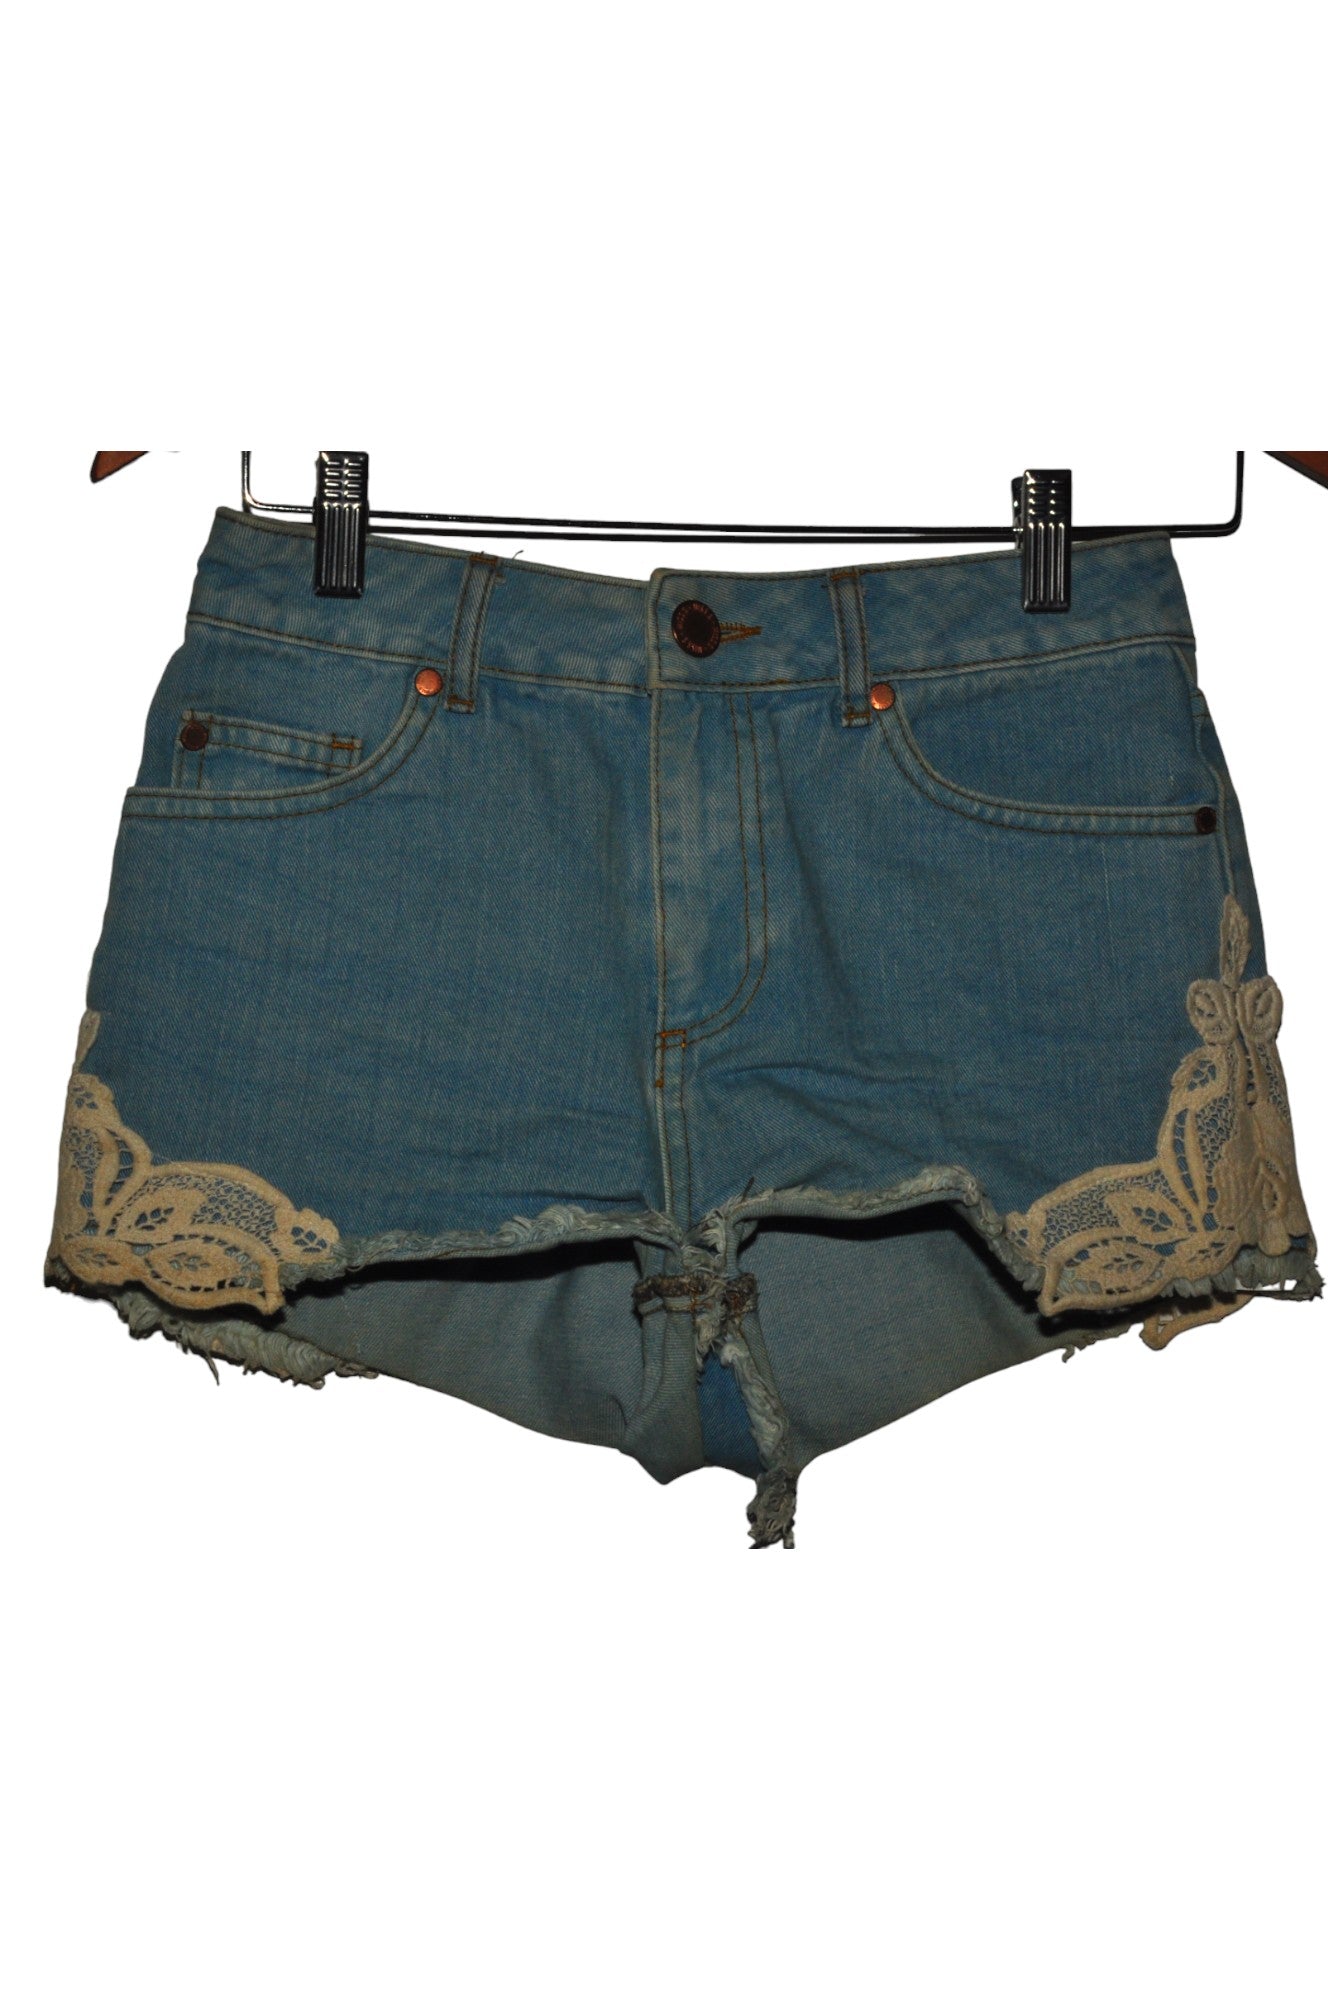 MISS SELFRIDGE Women Denim Shorts Regular fit in Blue - Size 8 | 10.49 $ KOOP